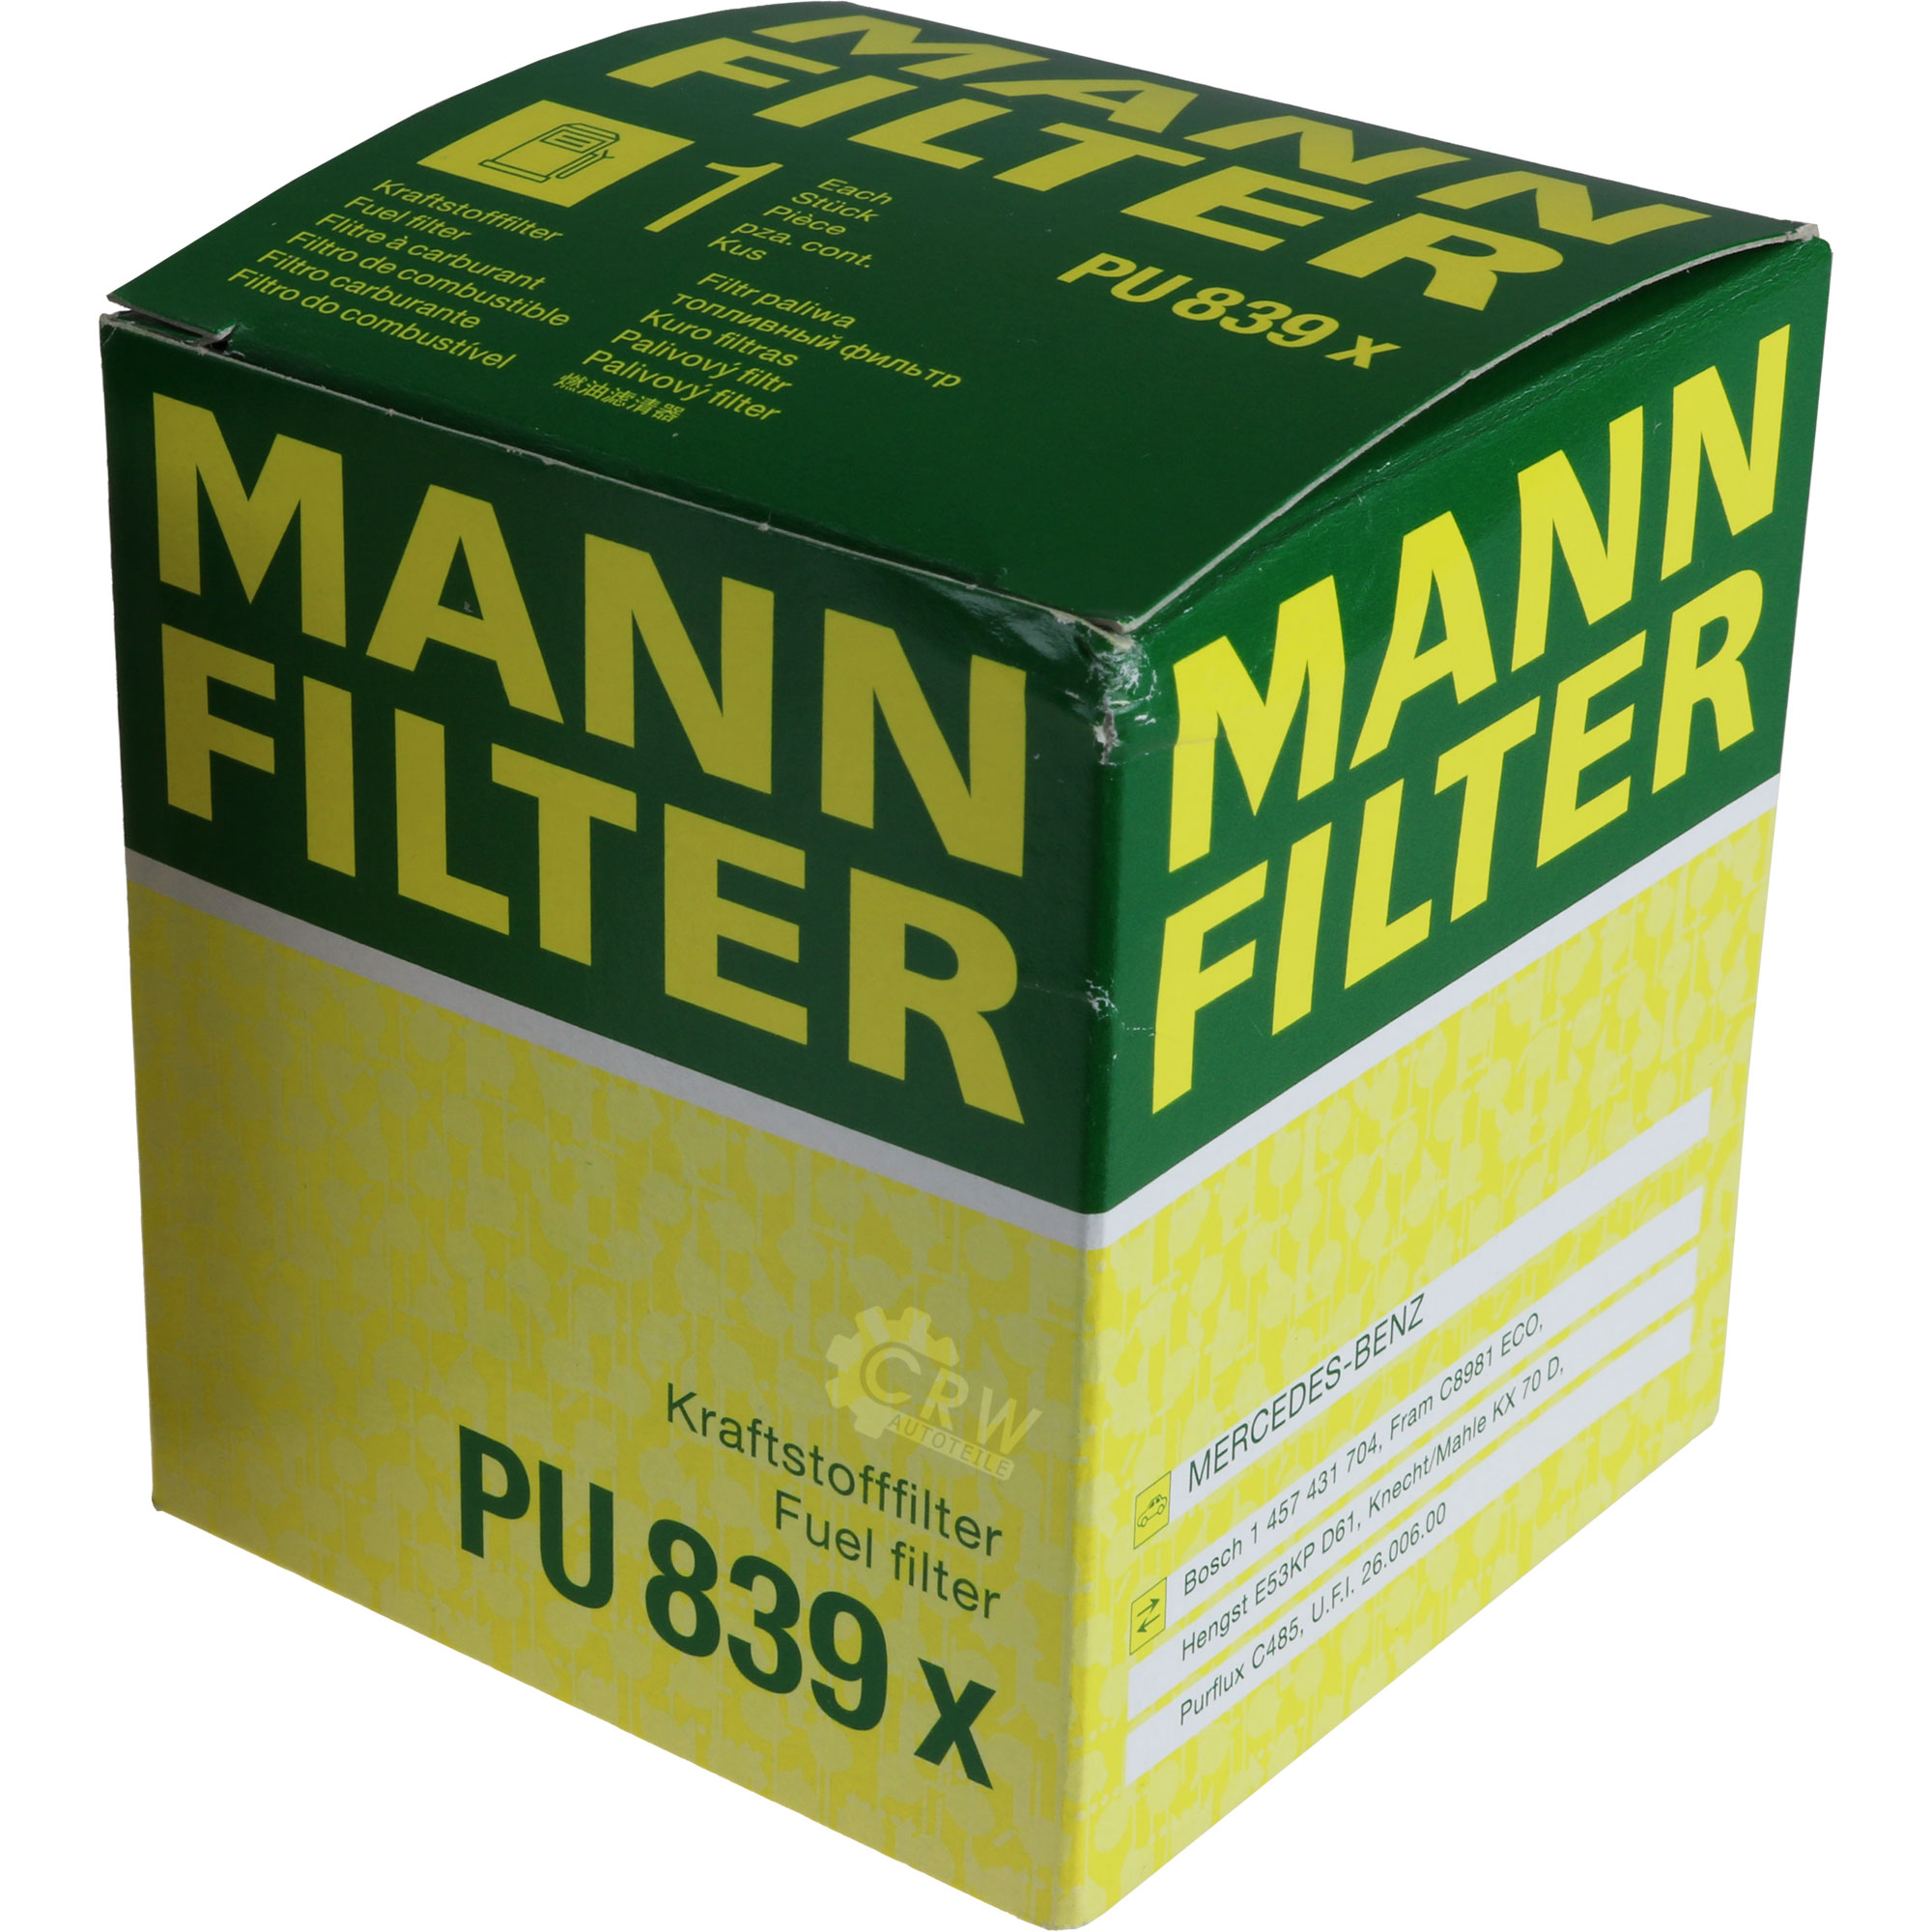 MANN-FILTER Kraftstofffilter PU 839 x Fuel Filter